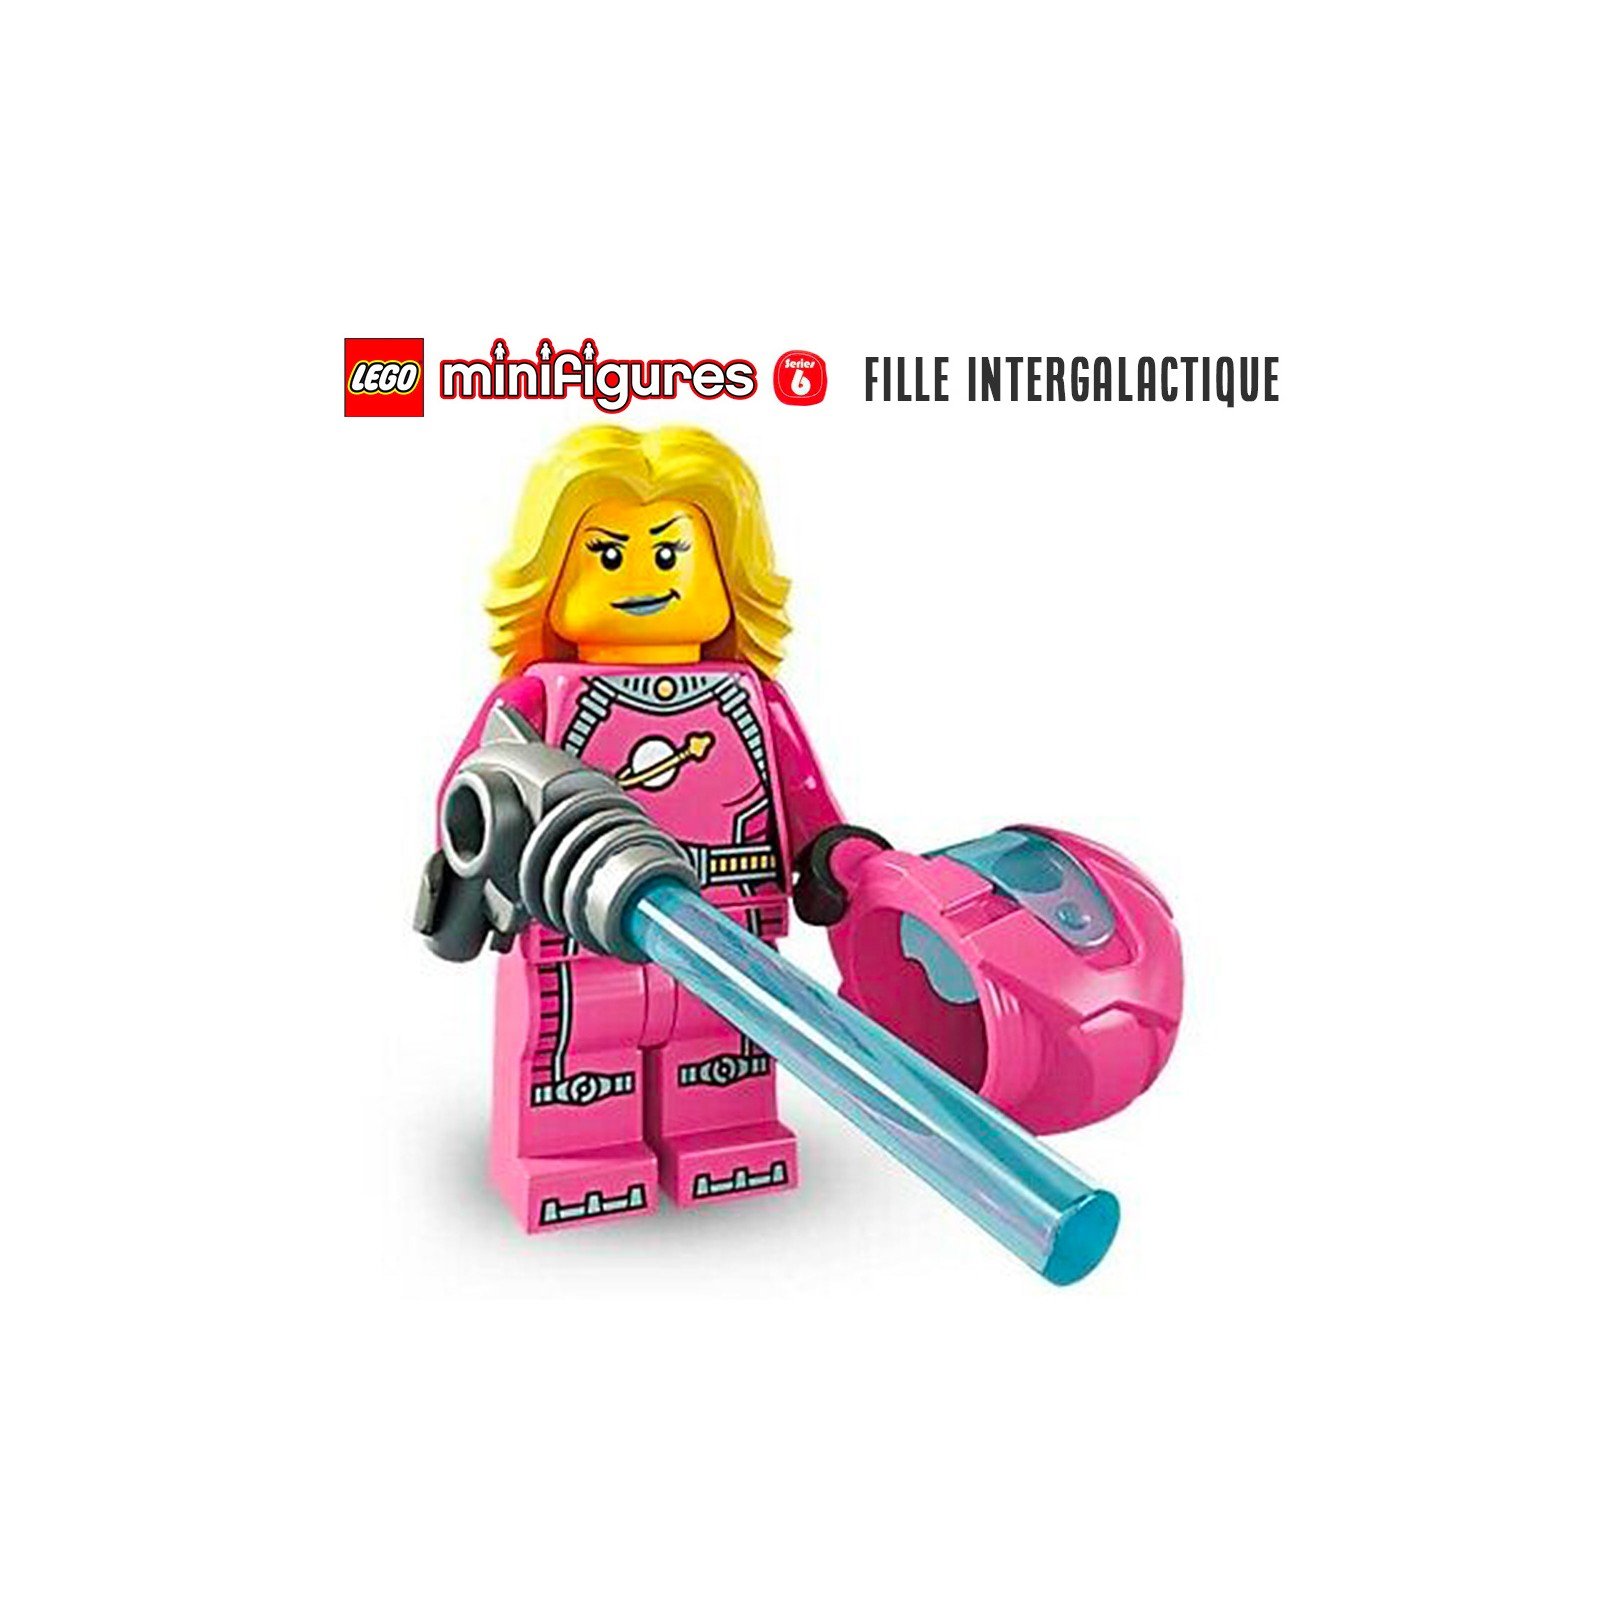 Minifigure LEGO® Série 6 - La fille intergalactique - Super Briques